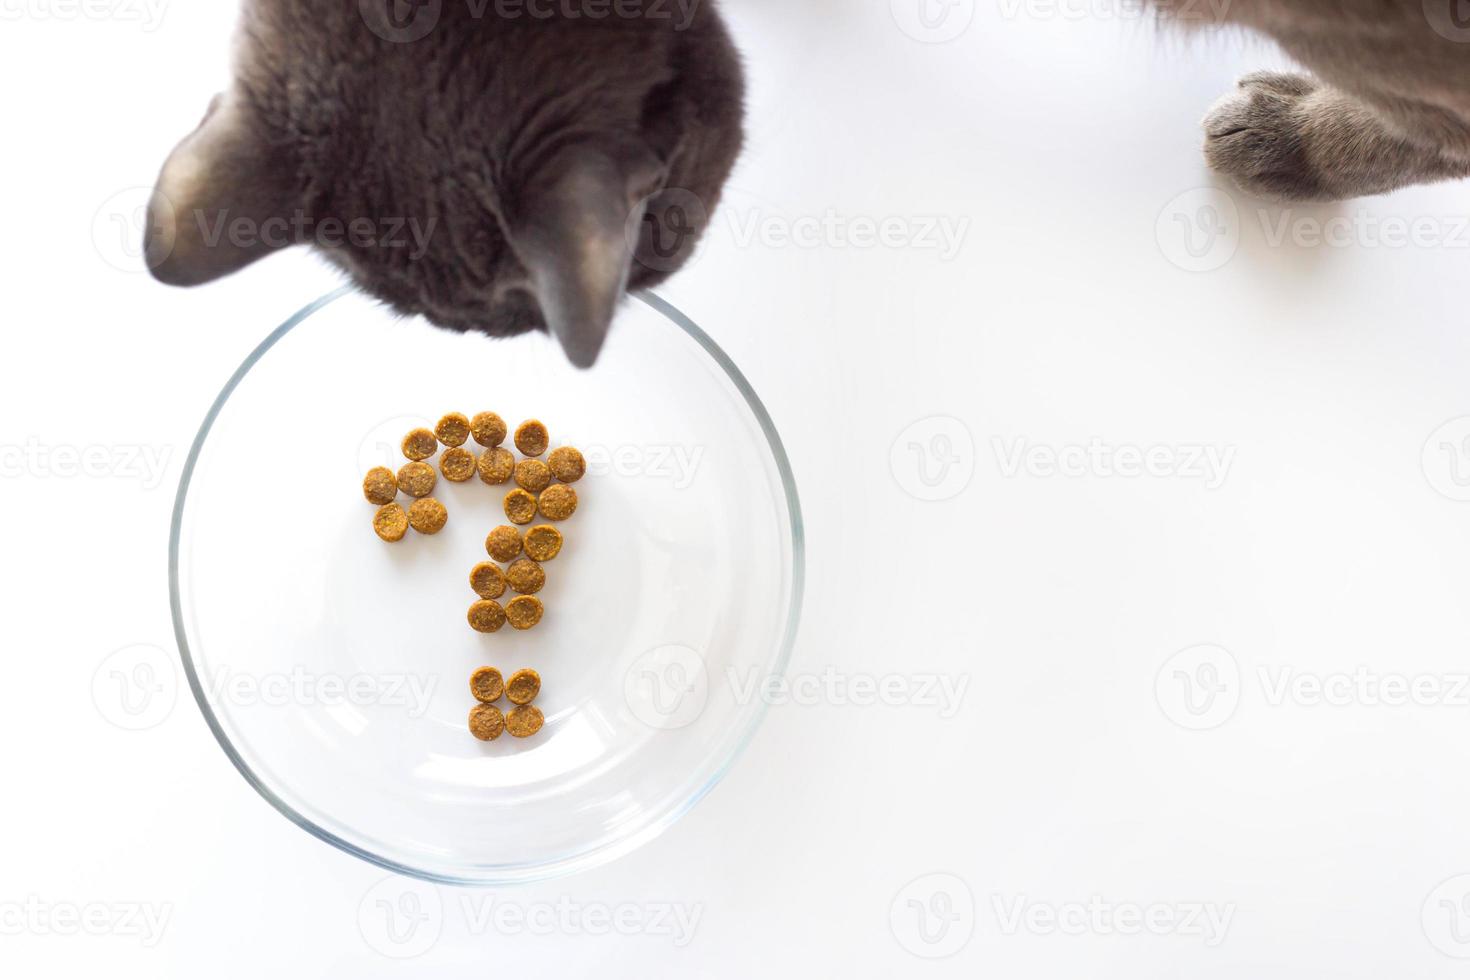 katze will fressen und schaut mit einer frage in eine leere schüssel. Fragezeichen aus Katzentrockenfutter in Schüssel auf weißem Hintergrund. konzept der auswahl eines trockenfutters für haustiere foto